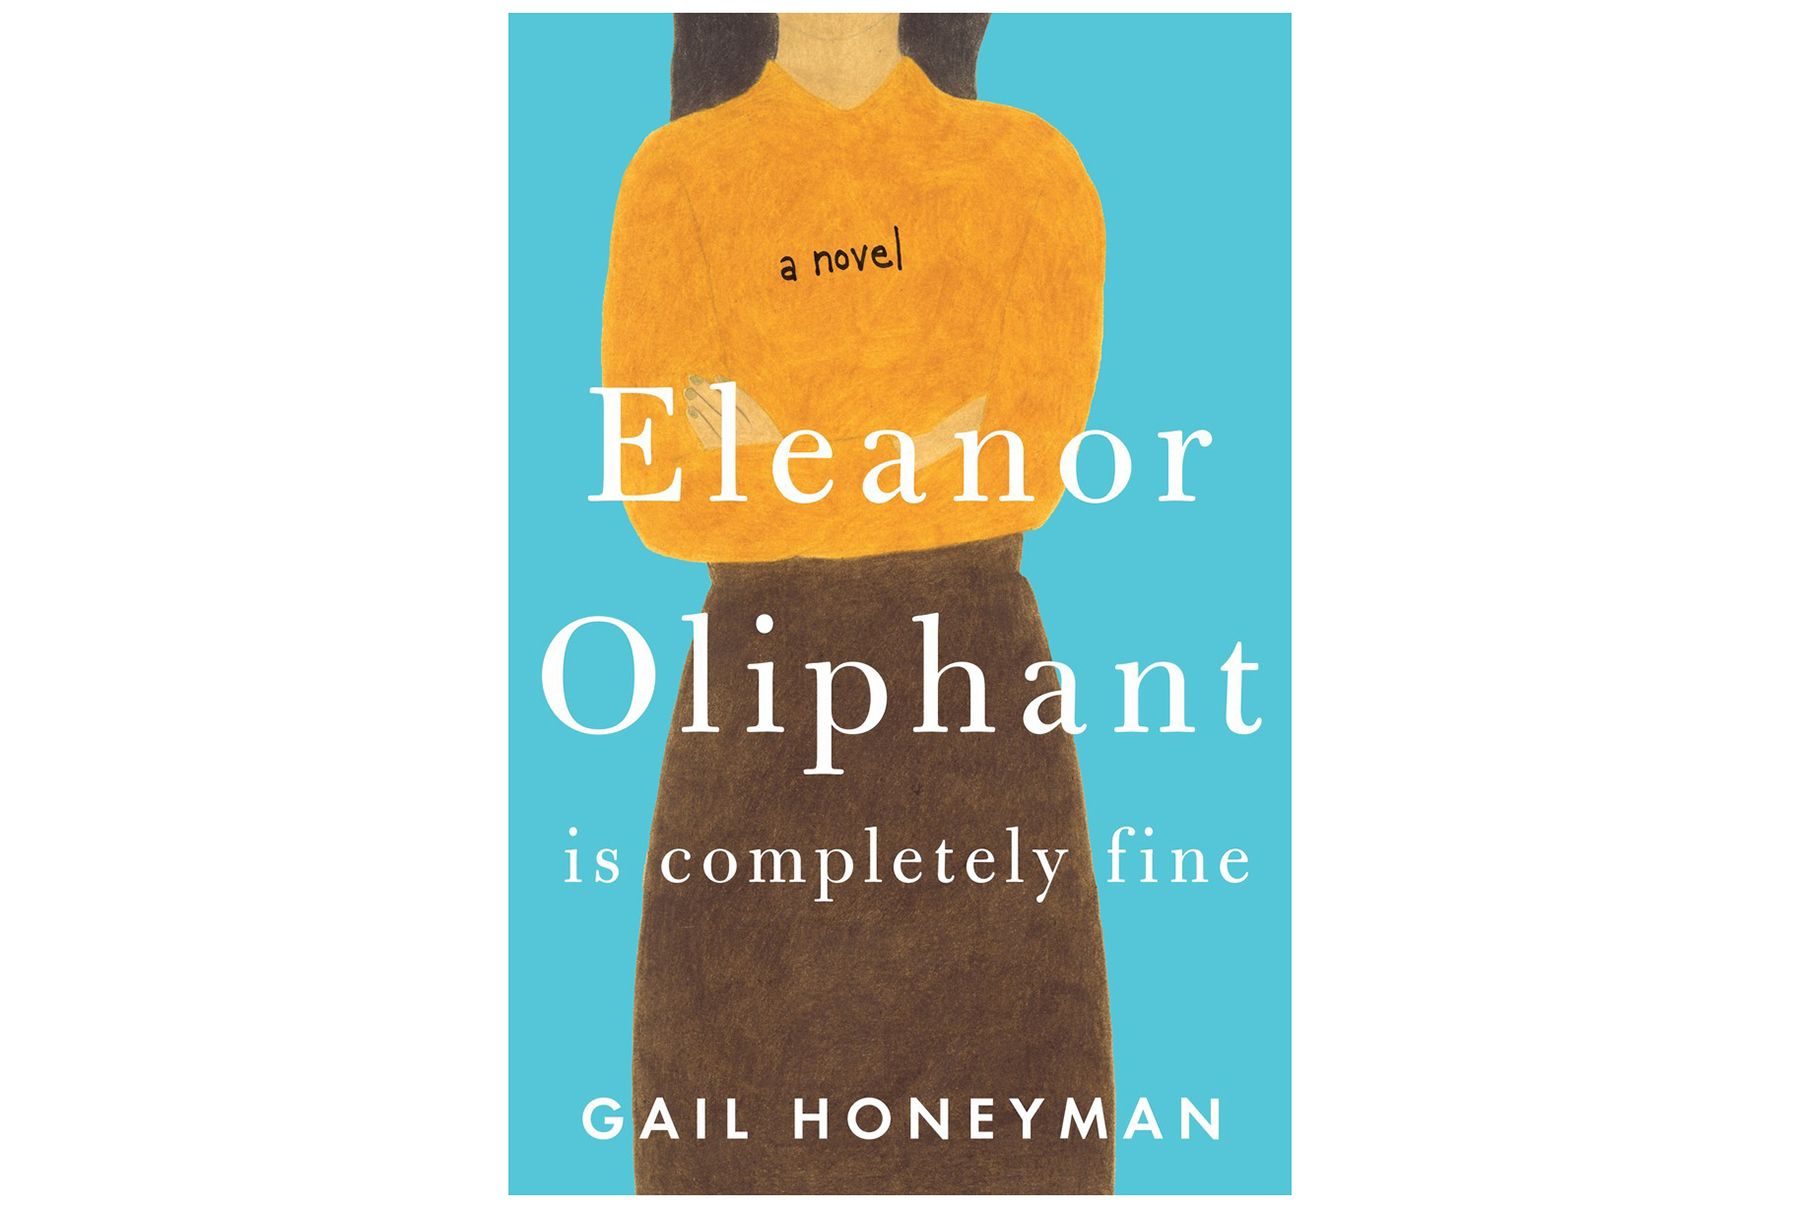 Eleanor Oliphant Gail Honeyman tərəfindən tamamilə yaxşıdır